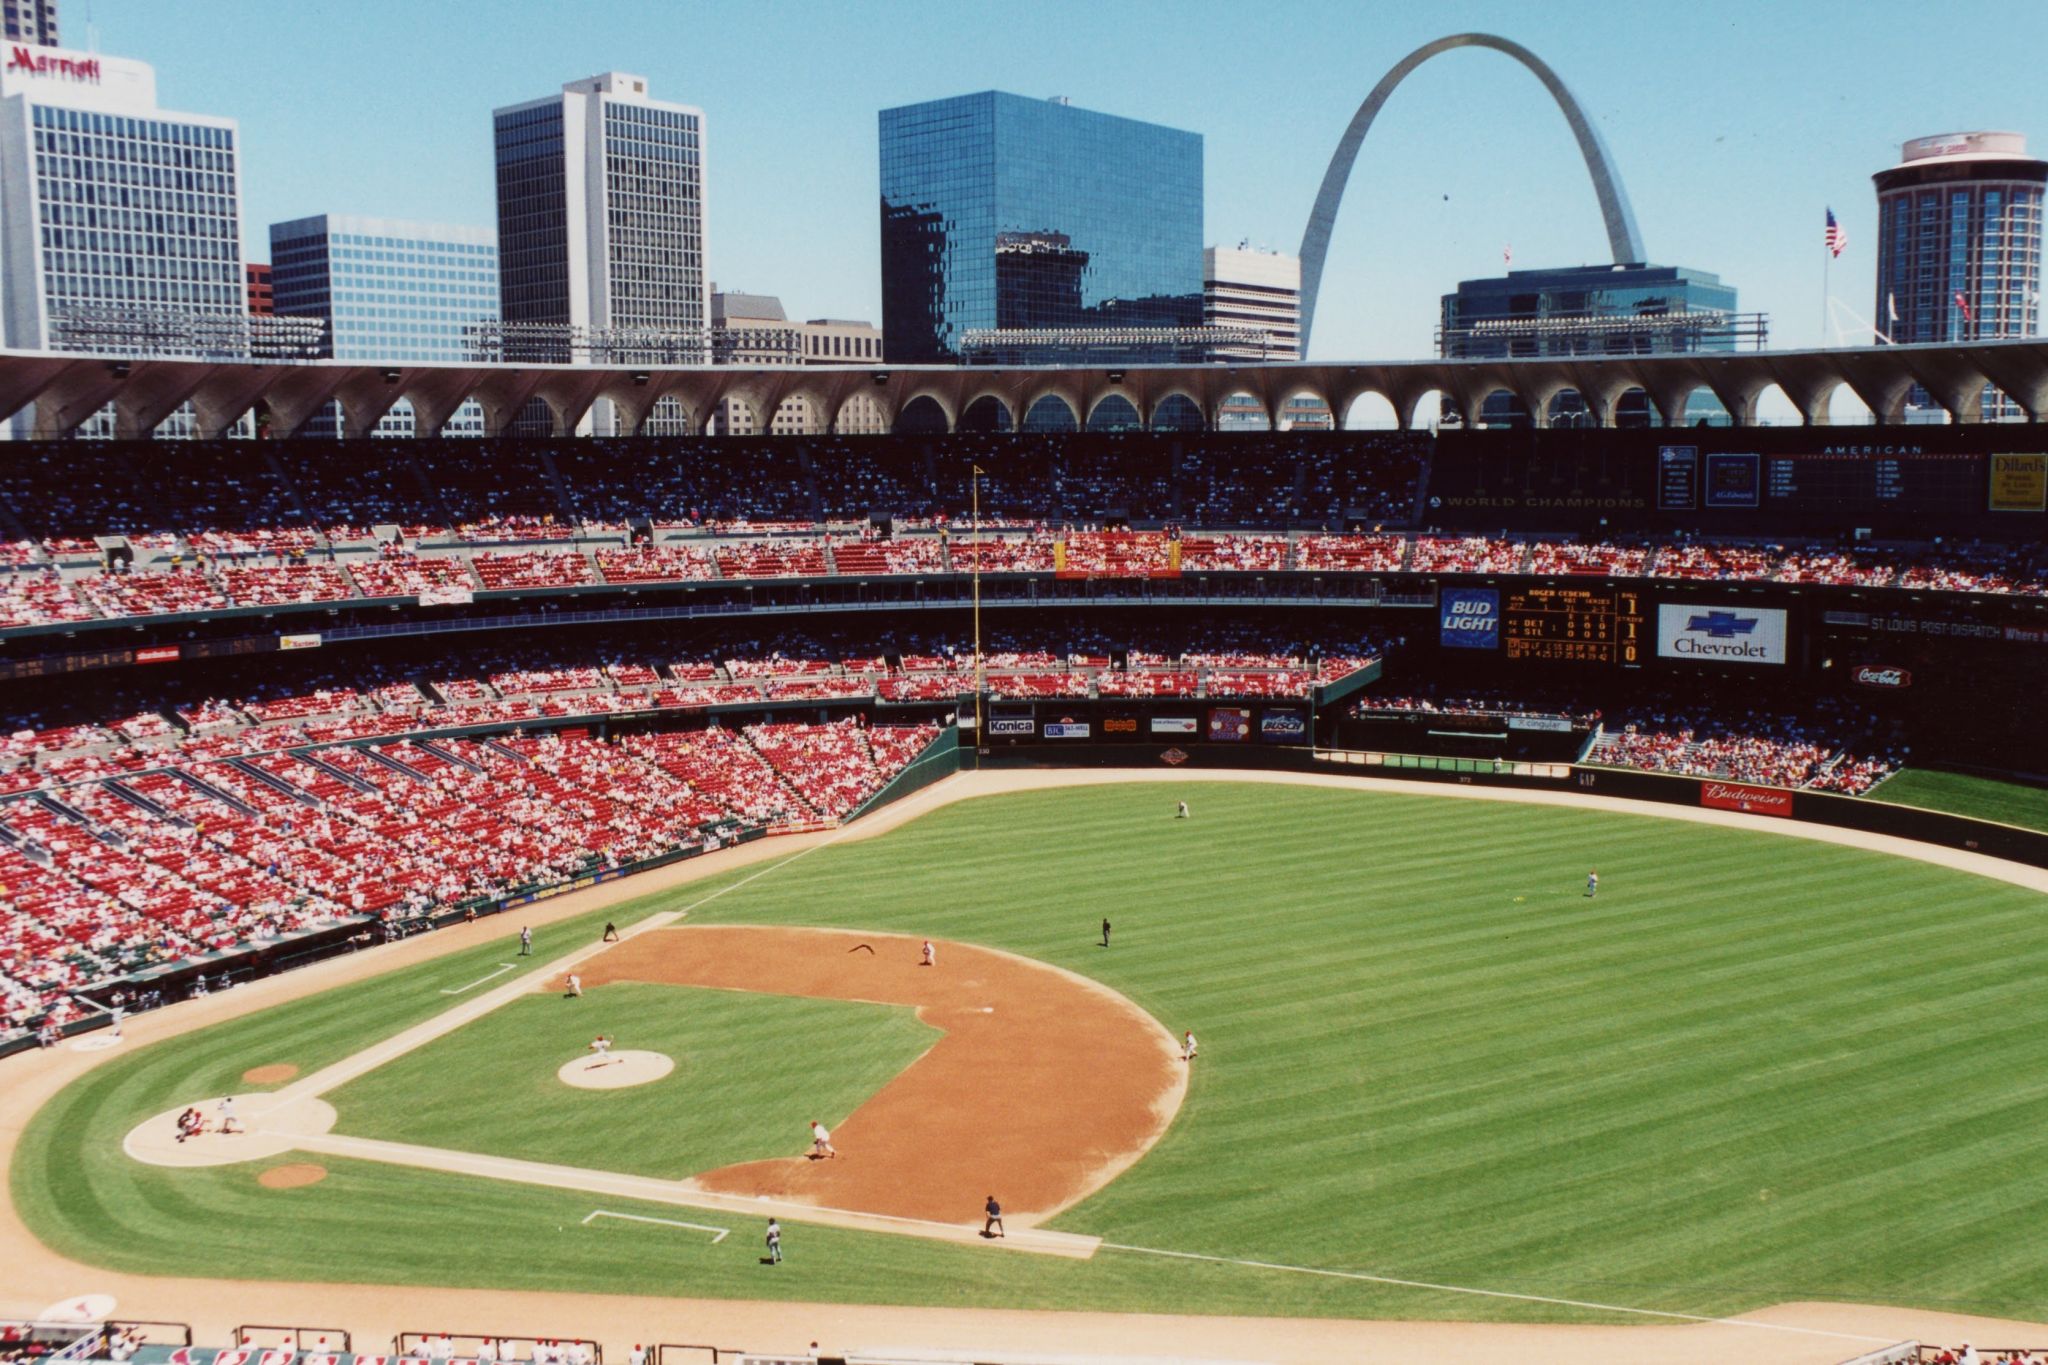 1982 St. Louis Cardinals Reuniting This Weekend at Busch Stadium